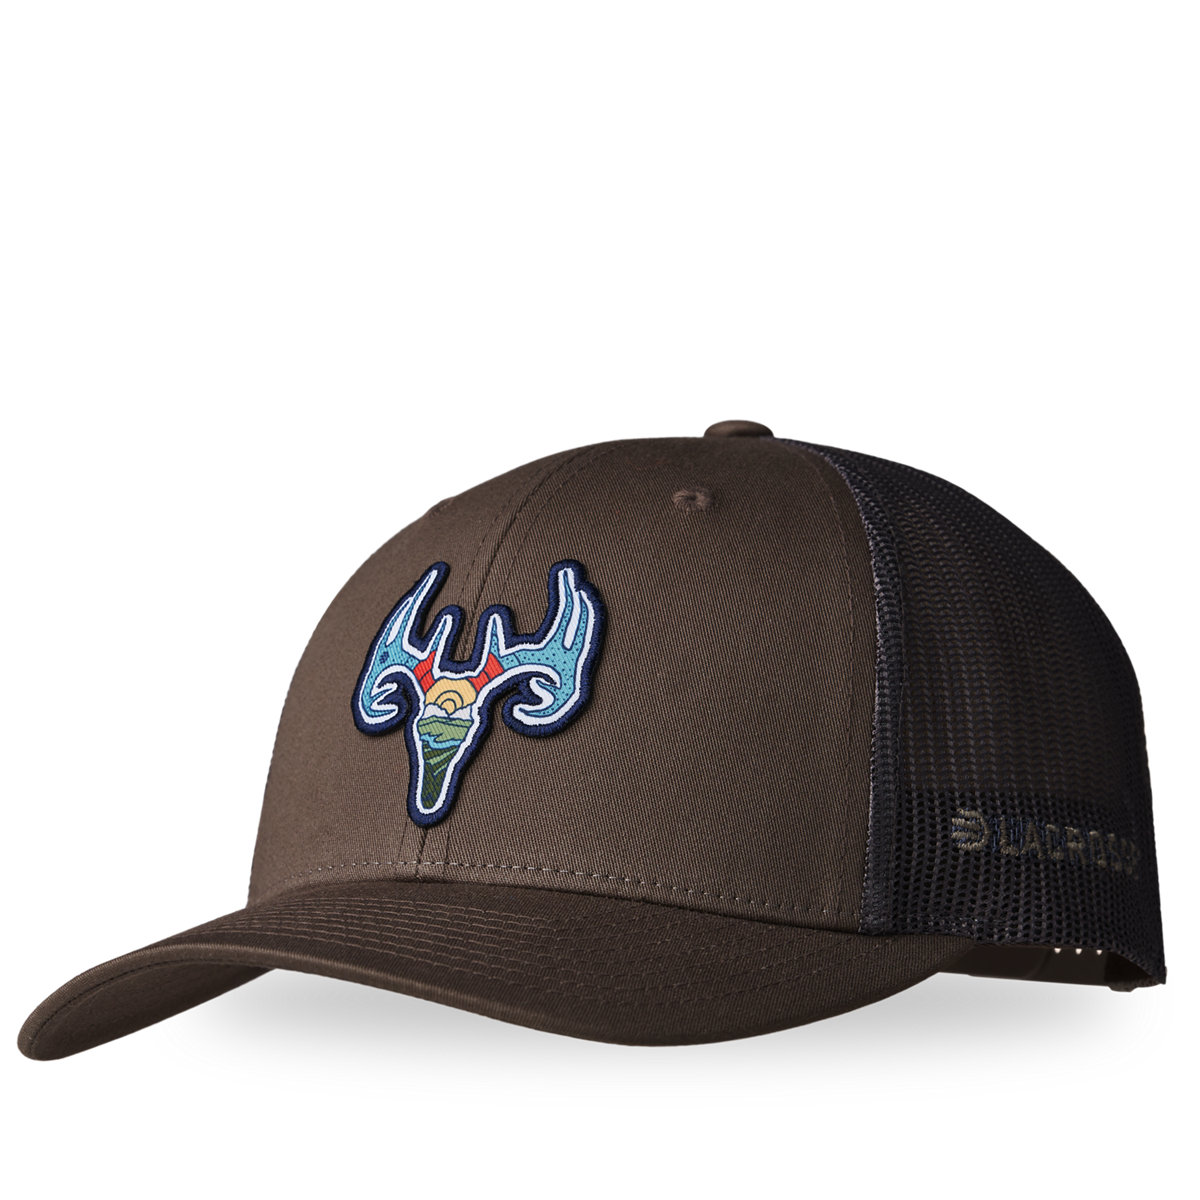 LaCrosse Footwear - LaCrosse Trucker Hat Choc Chip/Grey Brown - Deer